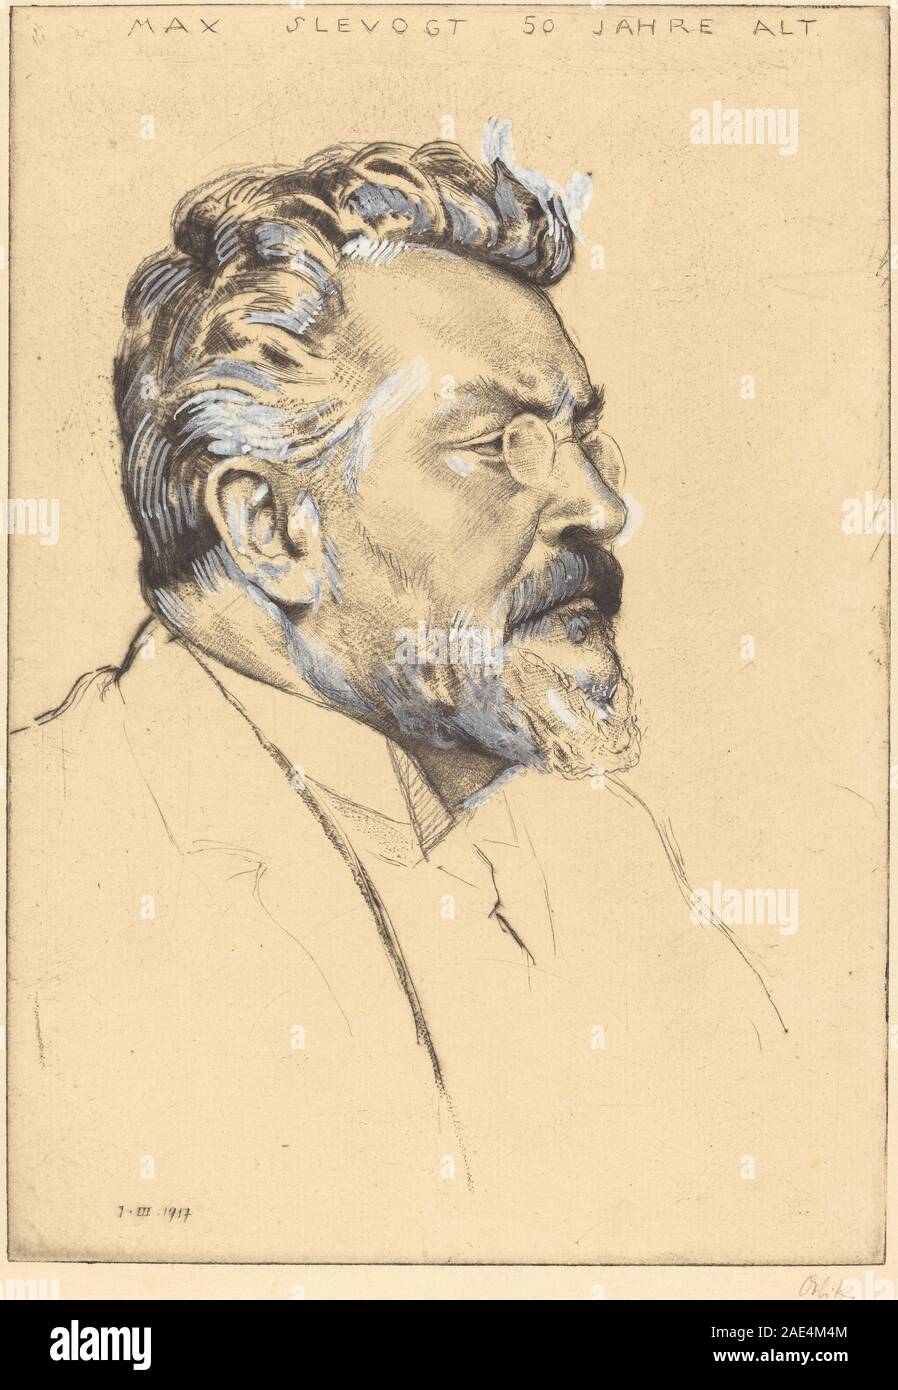 Max Slevogt, Emil Orlik, date 1917Max Slevogt, 1917 Banque D'Images